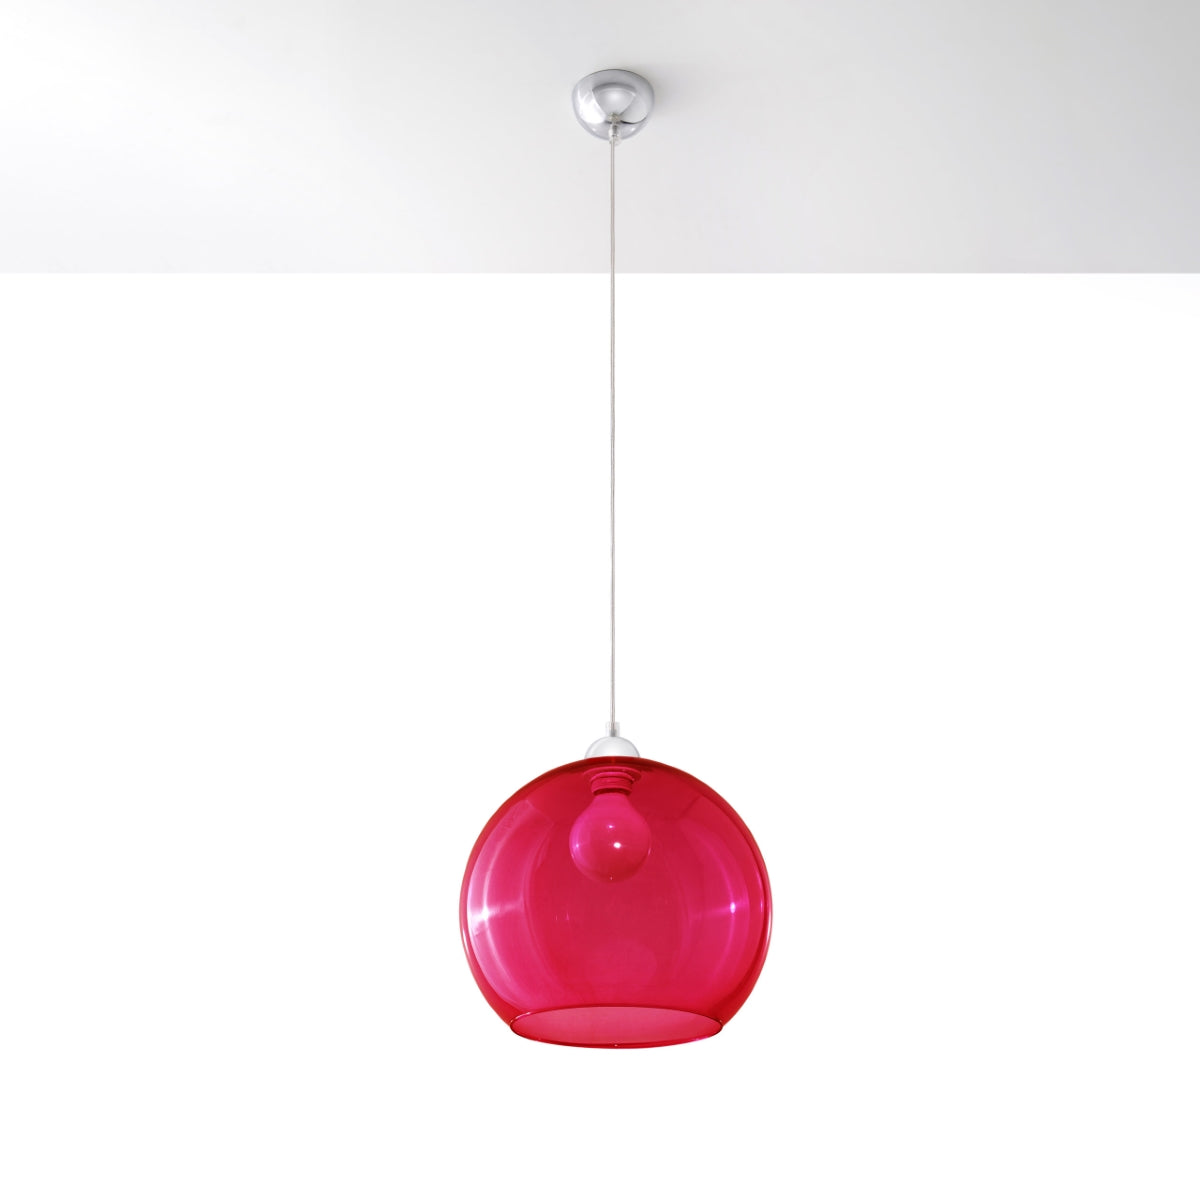 hanglamp-ball-rood